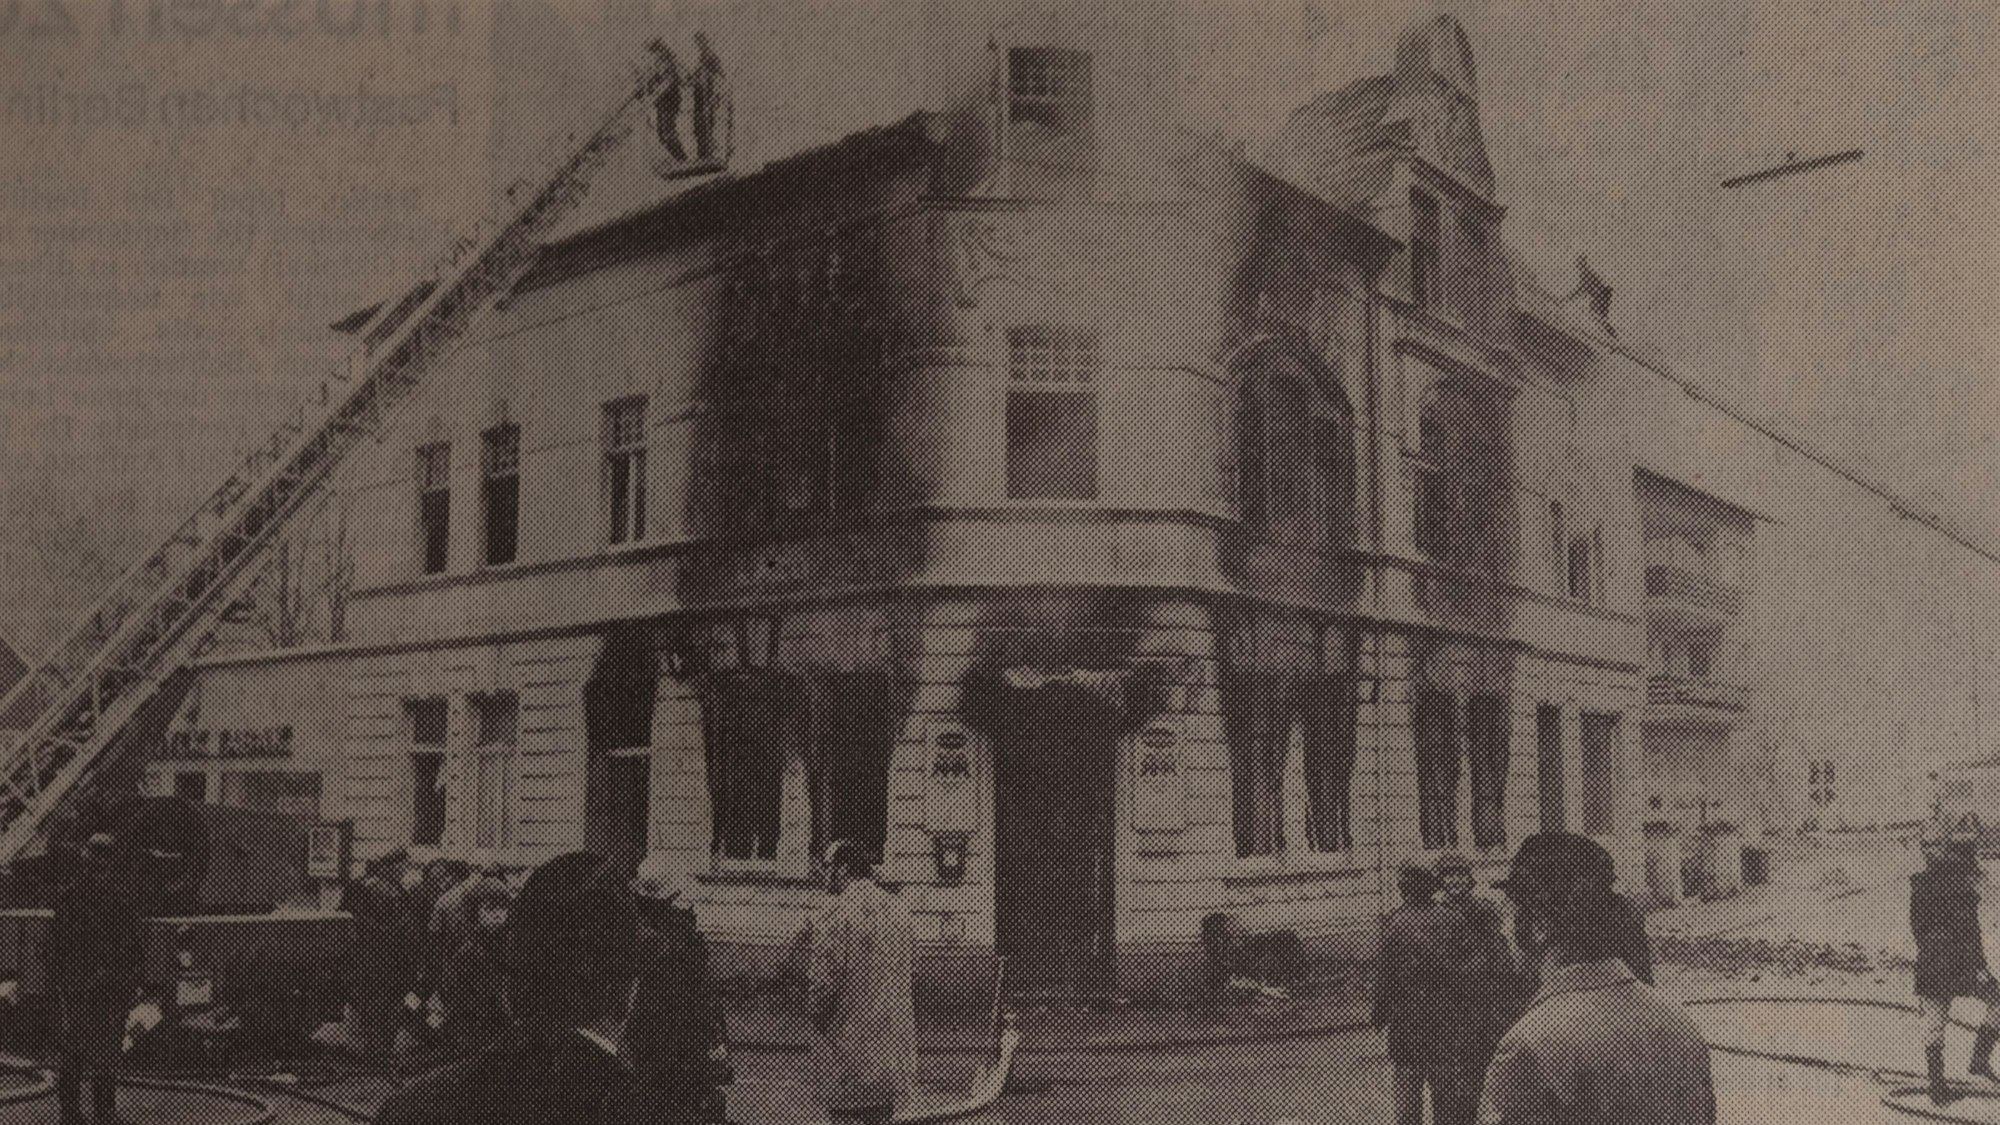 Das Unglückshaus in Mühlenseßmar. Durch den Brand in der Gaststätte Deutsches Eck starben vier Menschen